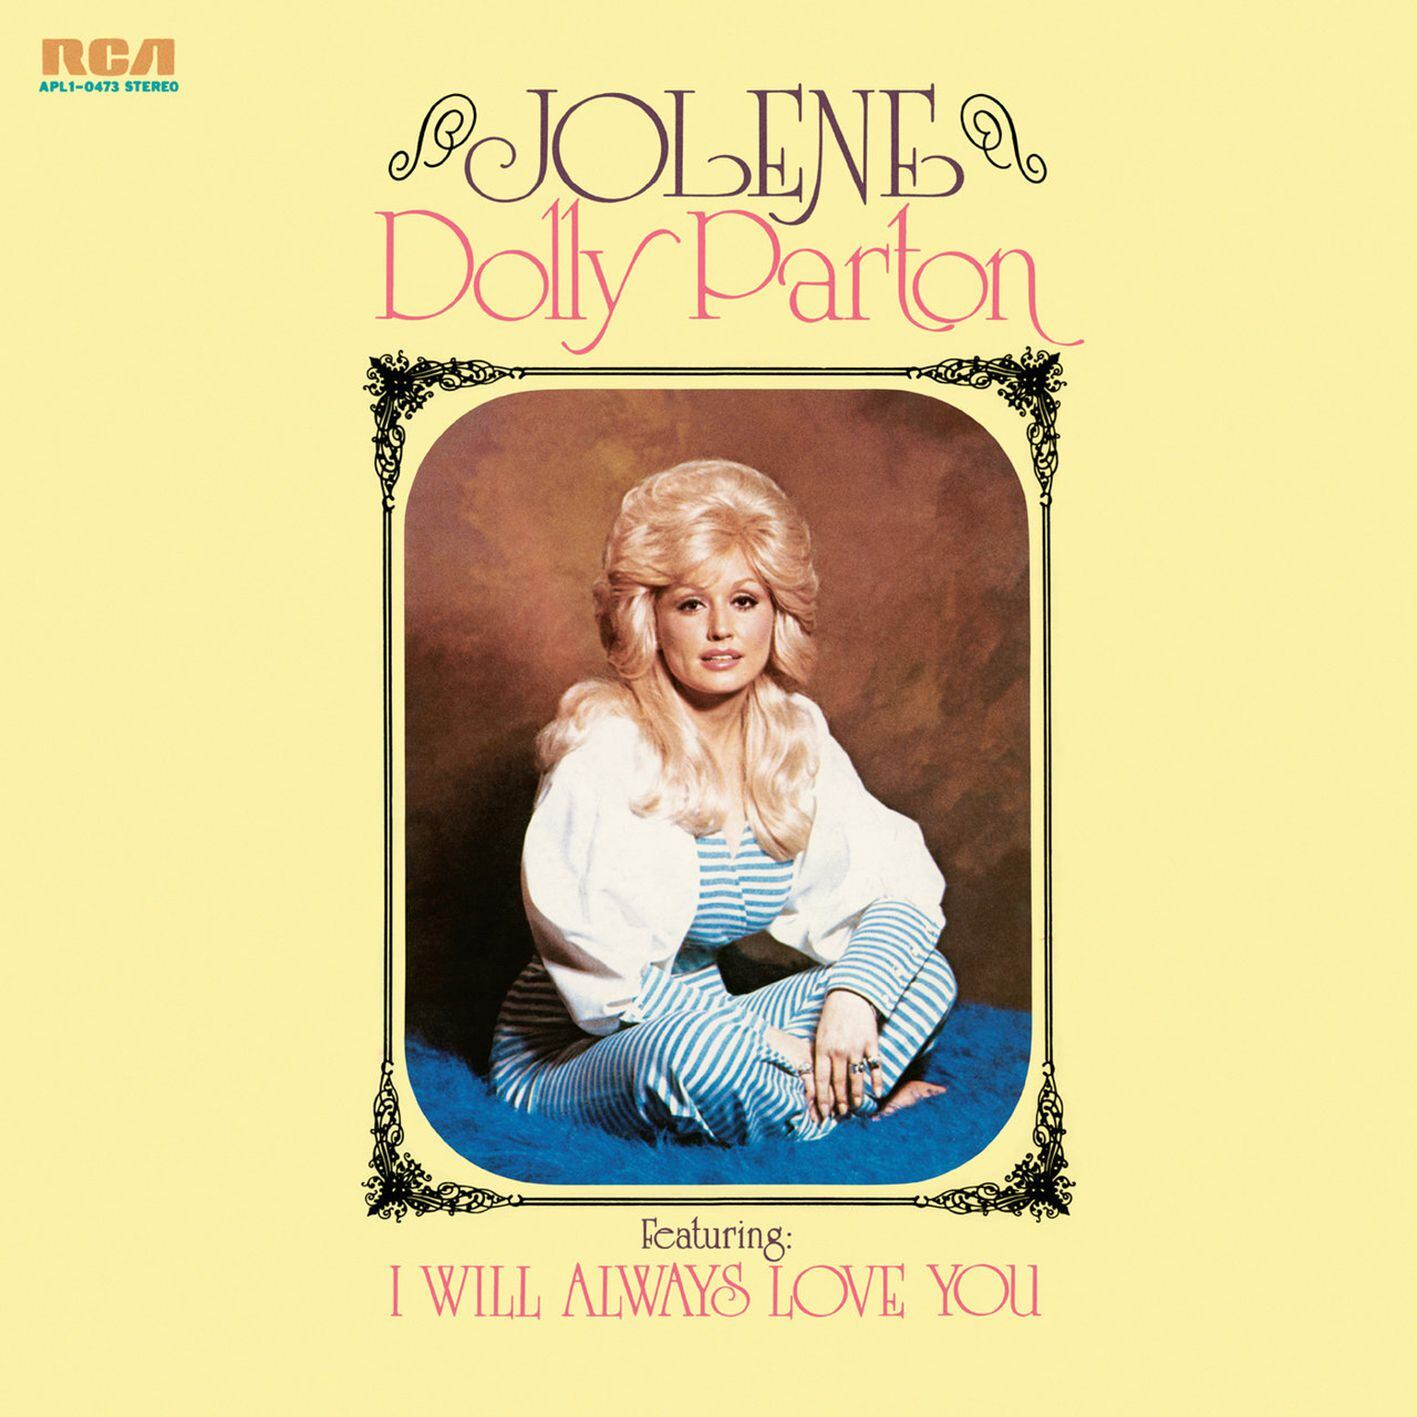 Portada del álbum 'Jolene' (1974), de Dolly Parton.